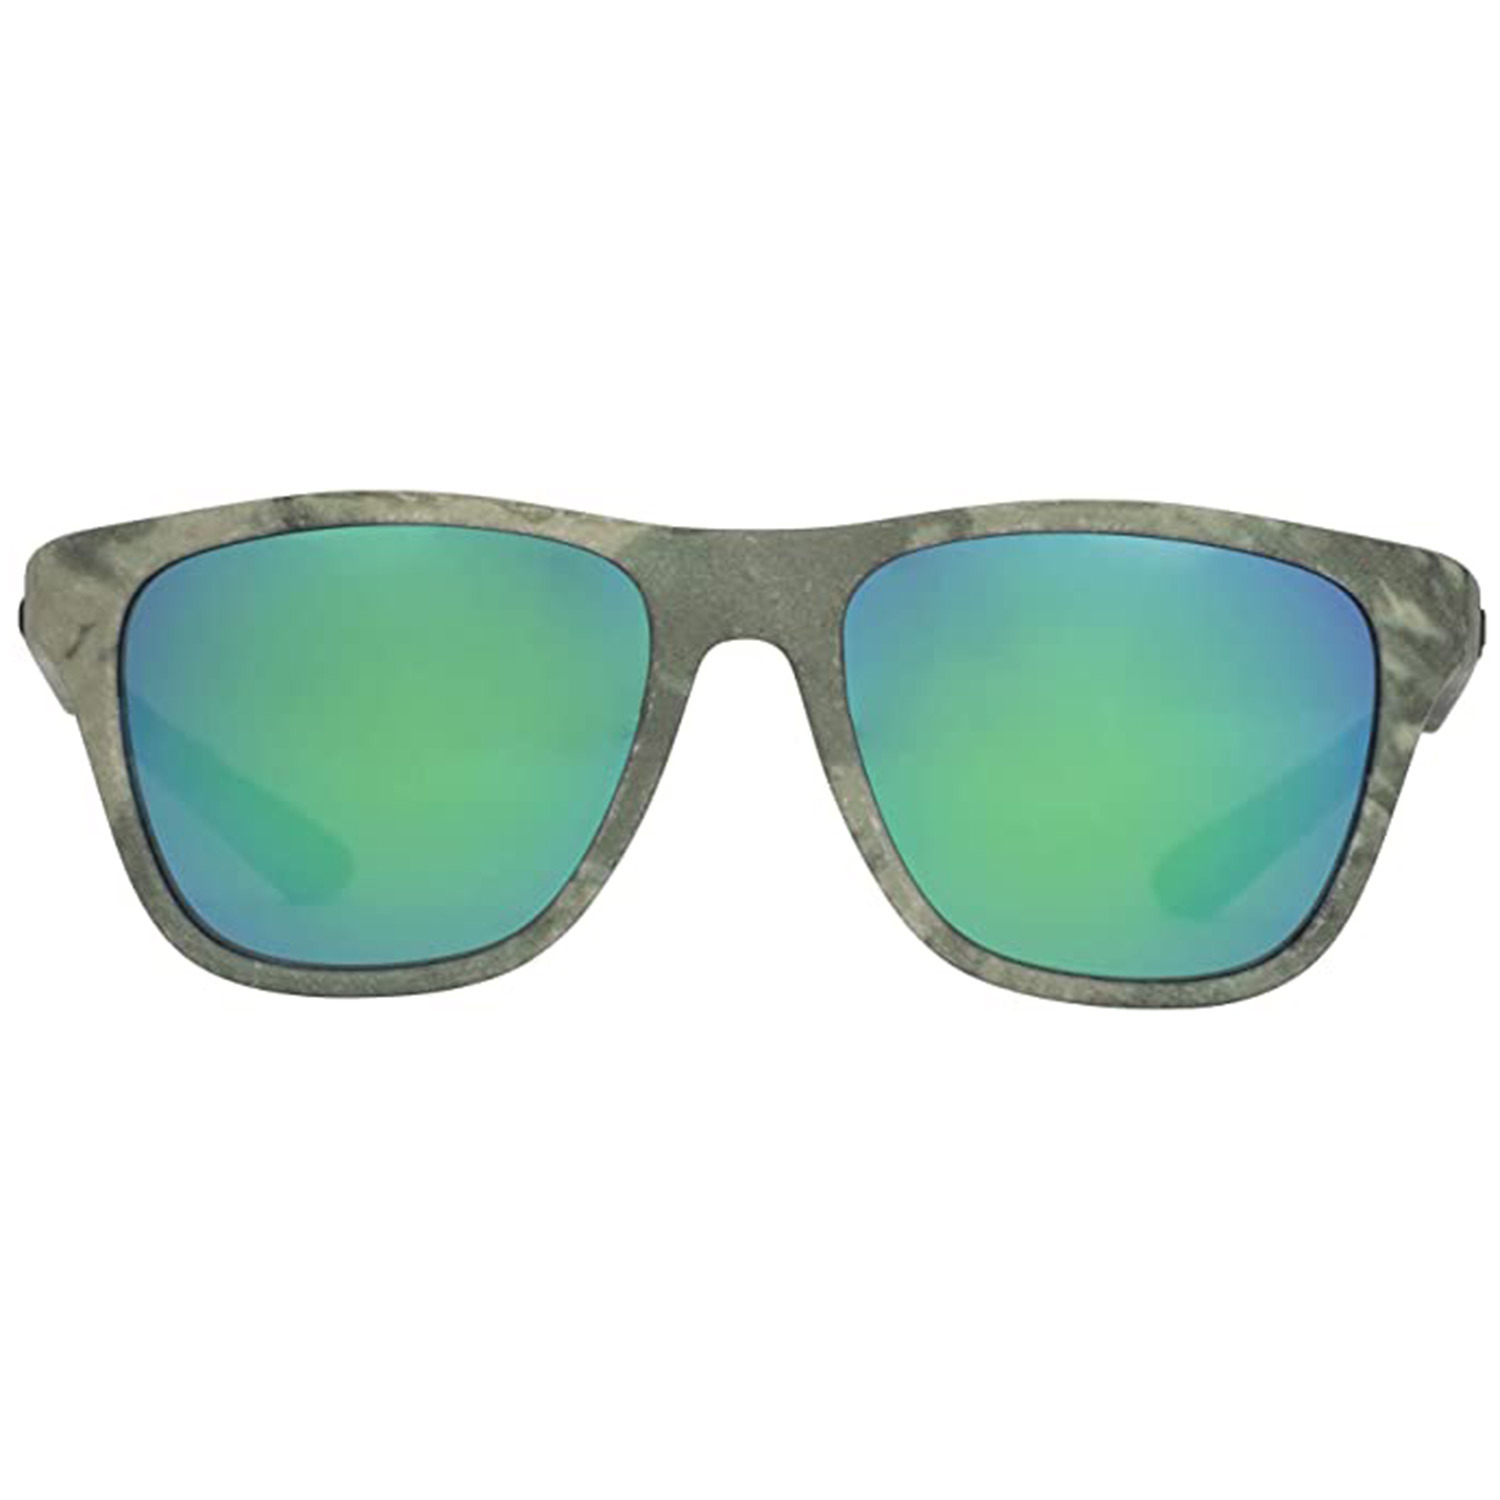 Swivel Polarized Sunglasses West Marine